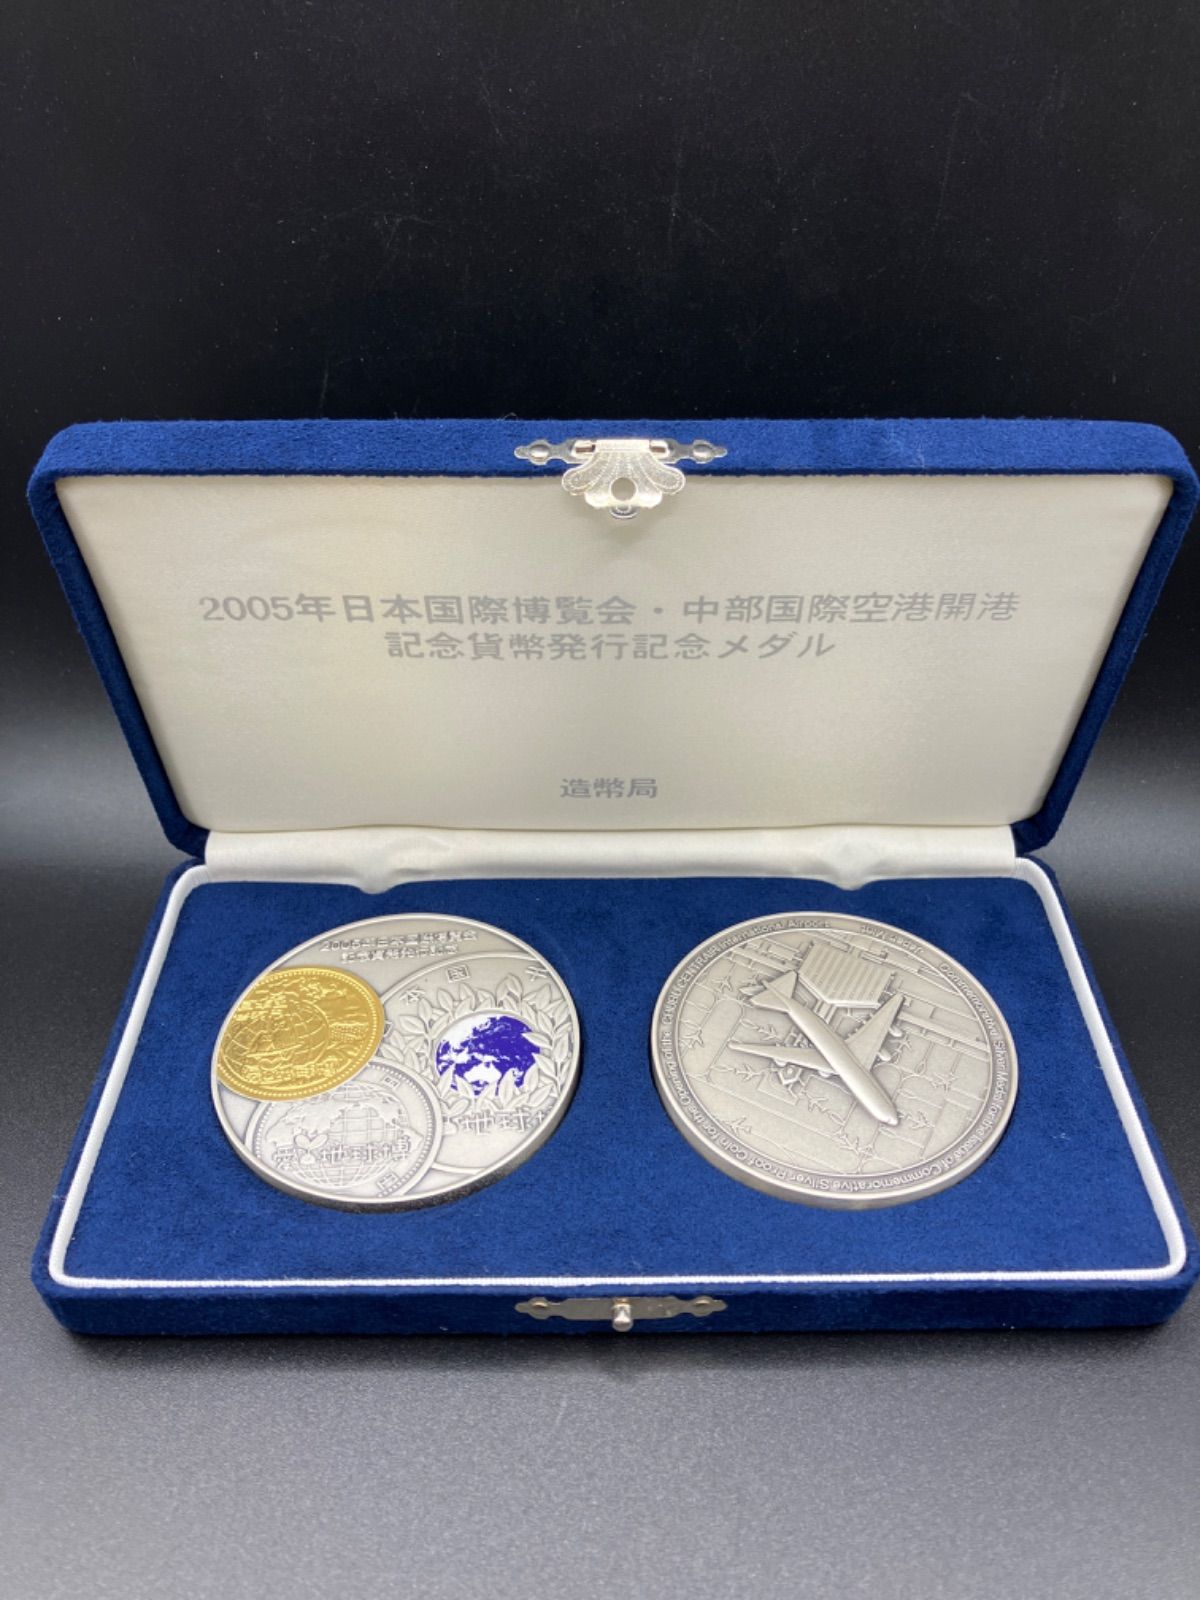 2005年日本国際博覧会 中部国際空港開港 記念貨幣発行記念純銀製メダル